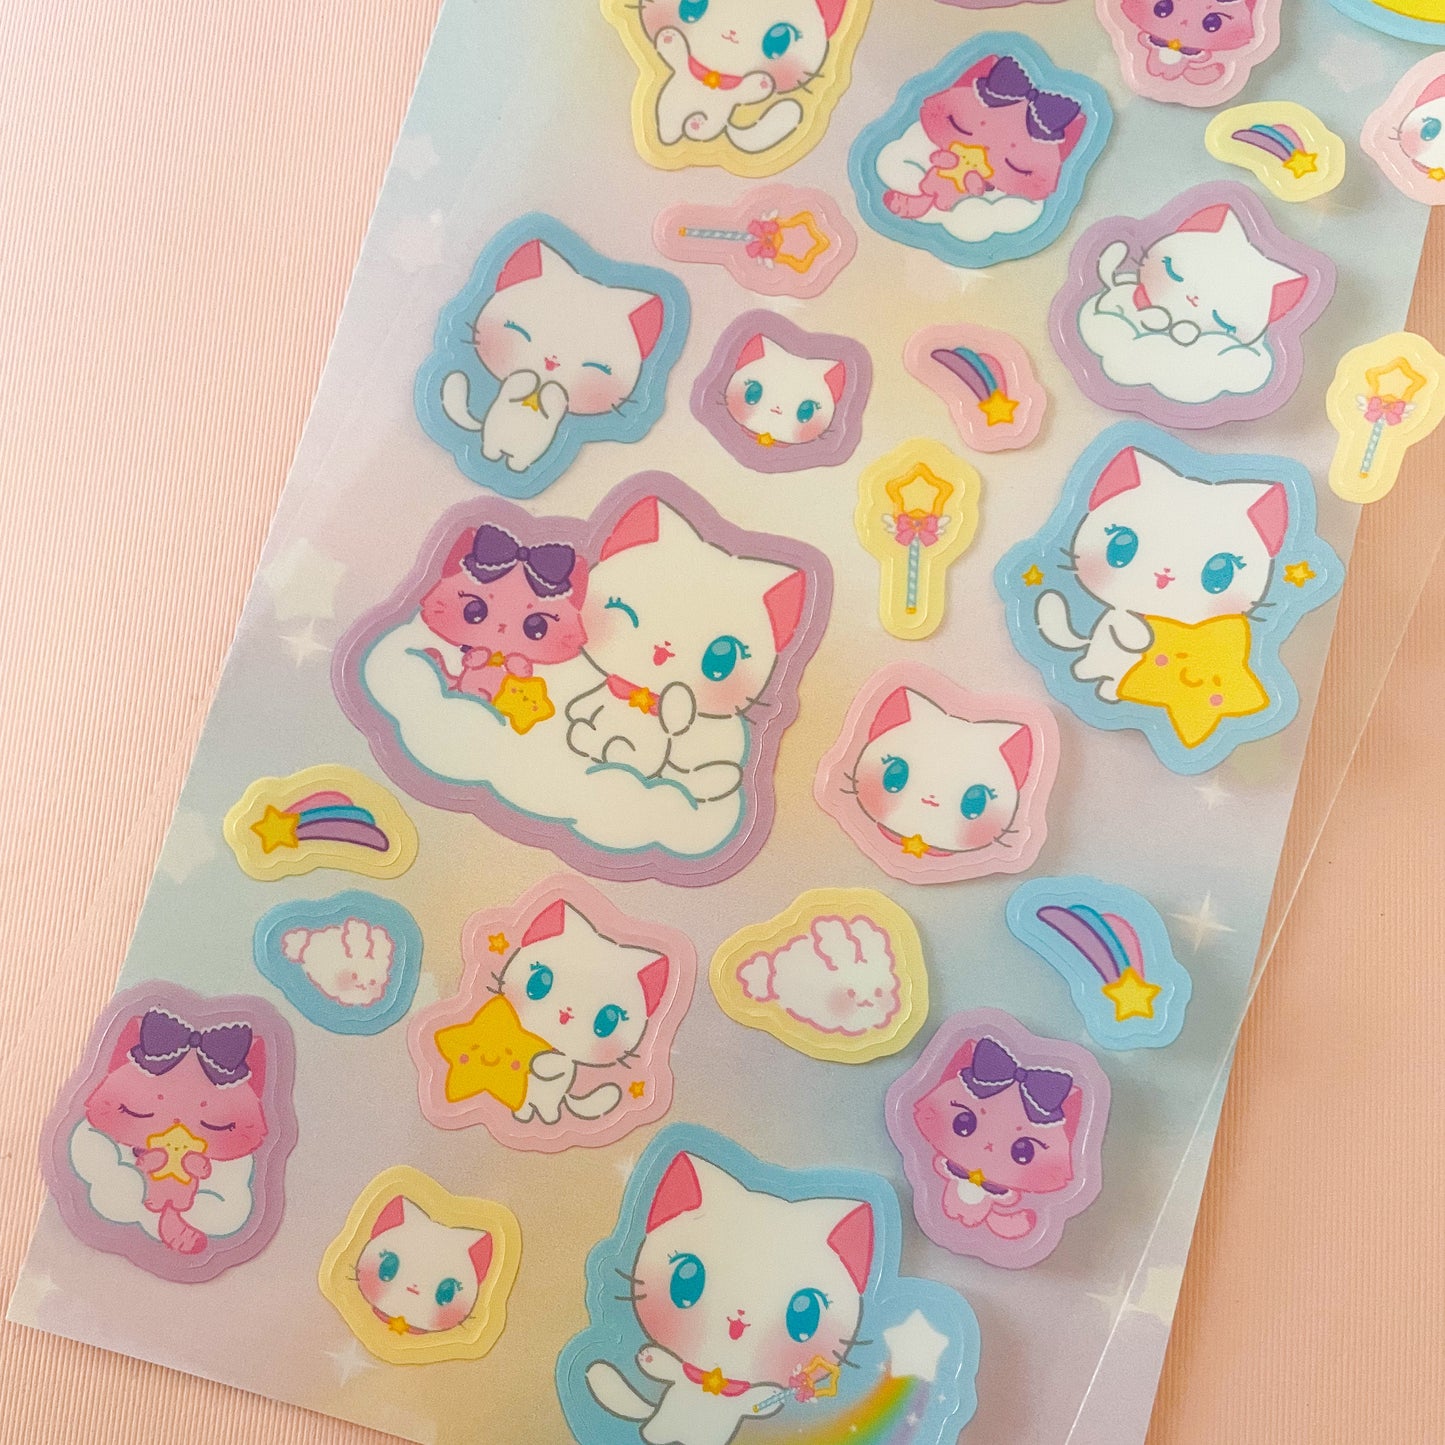 Dreamy Kitty Sticker Sheet